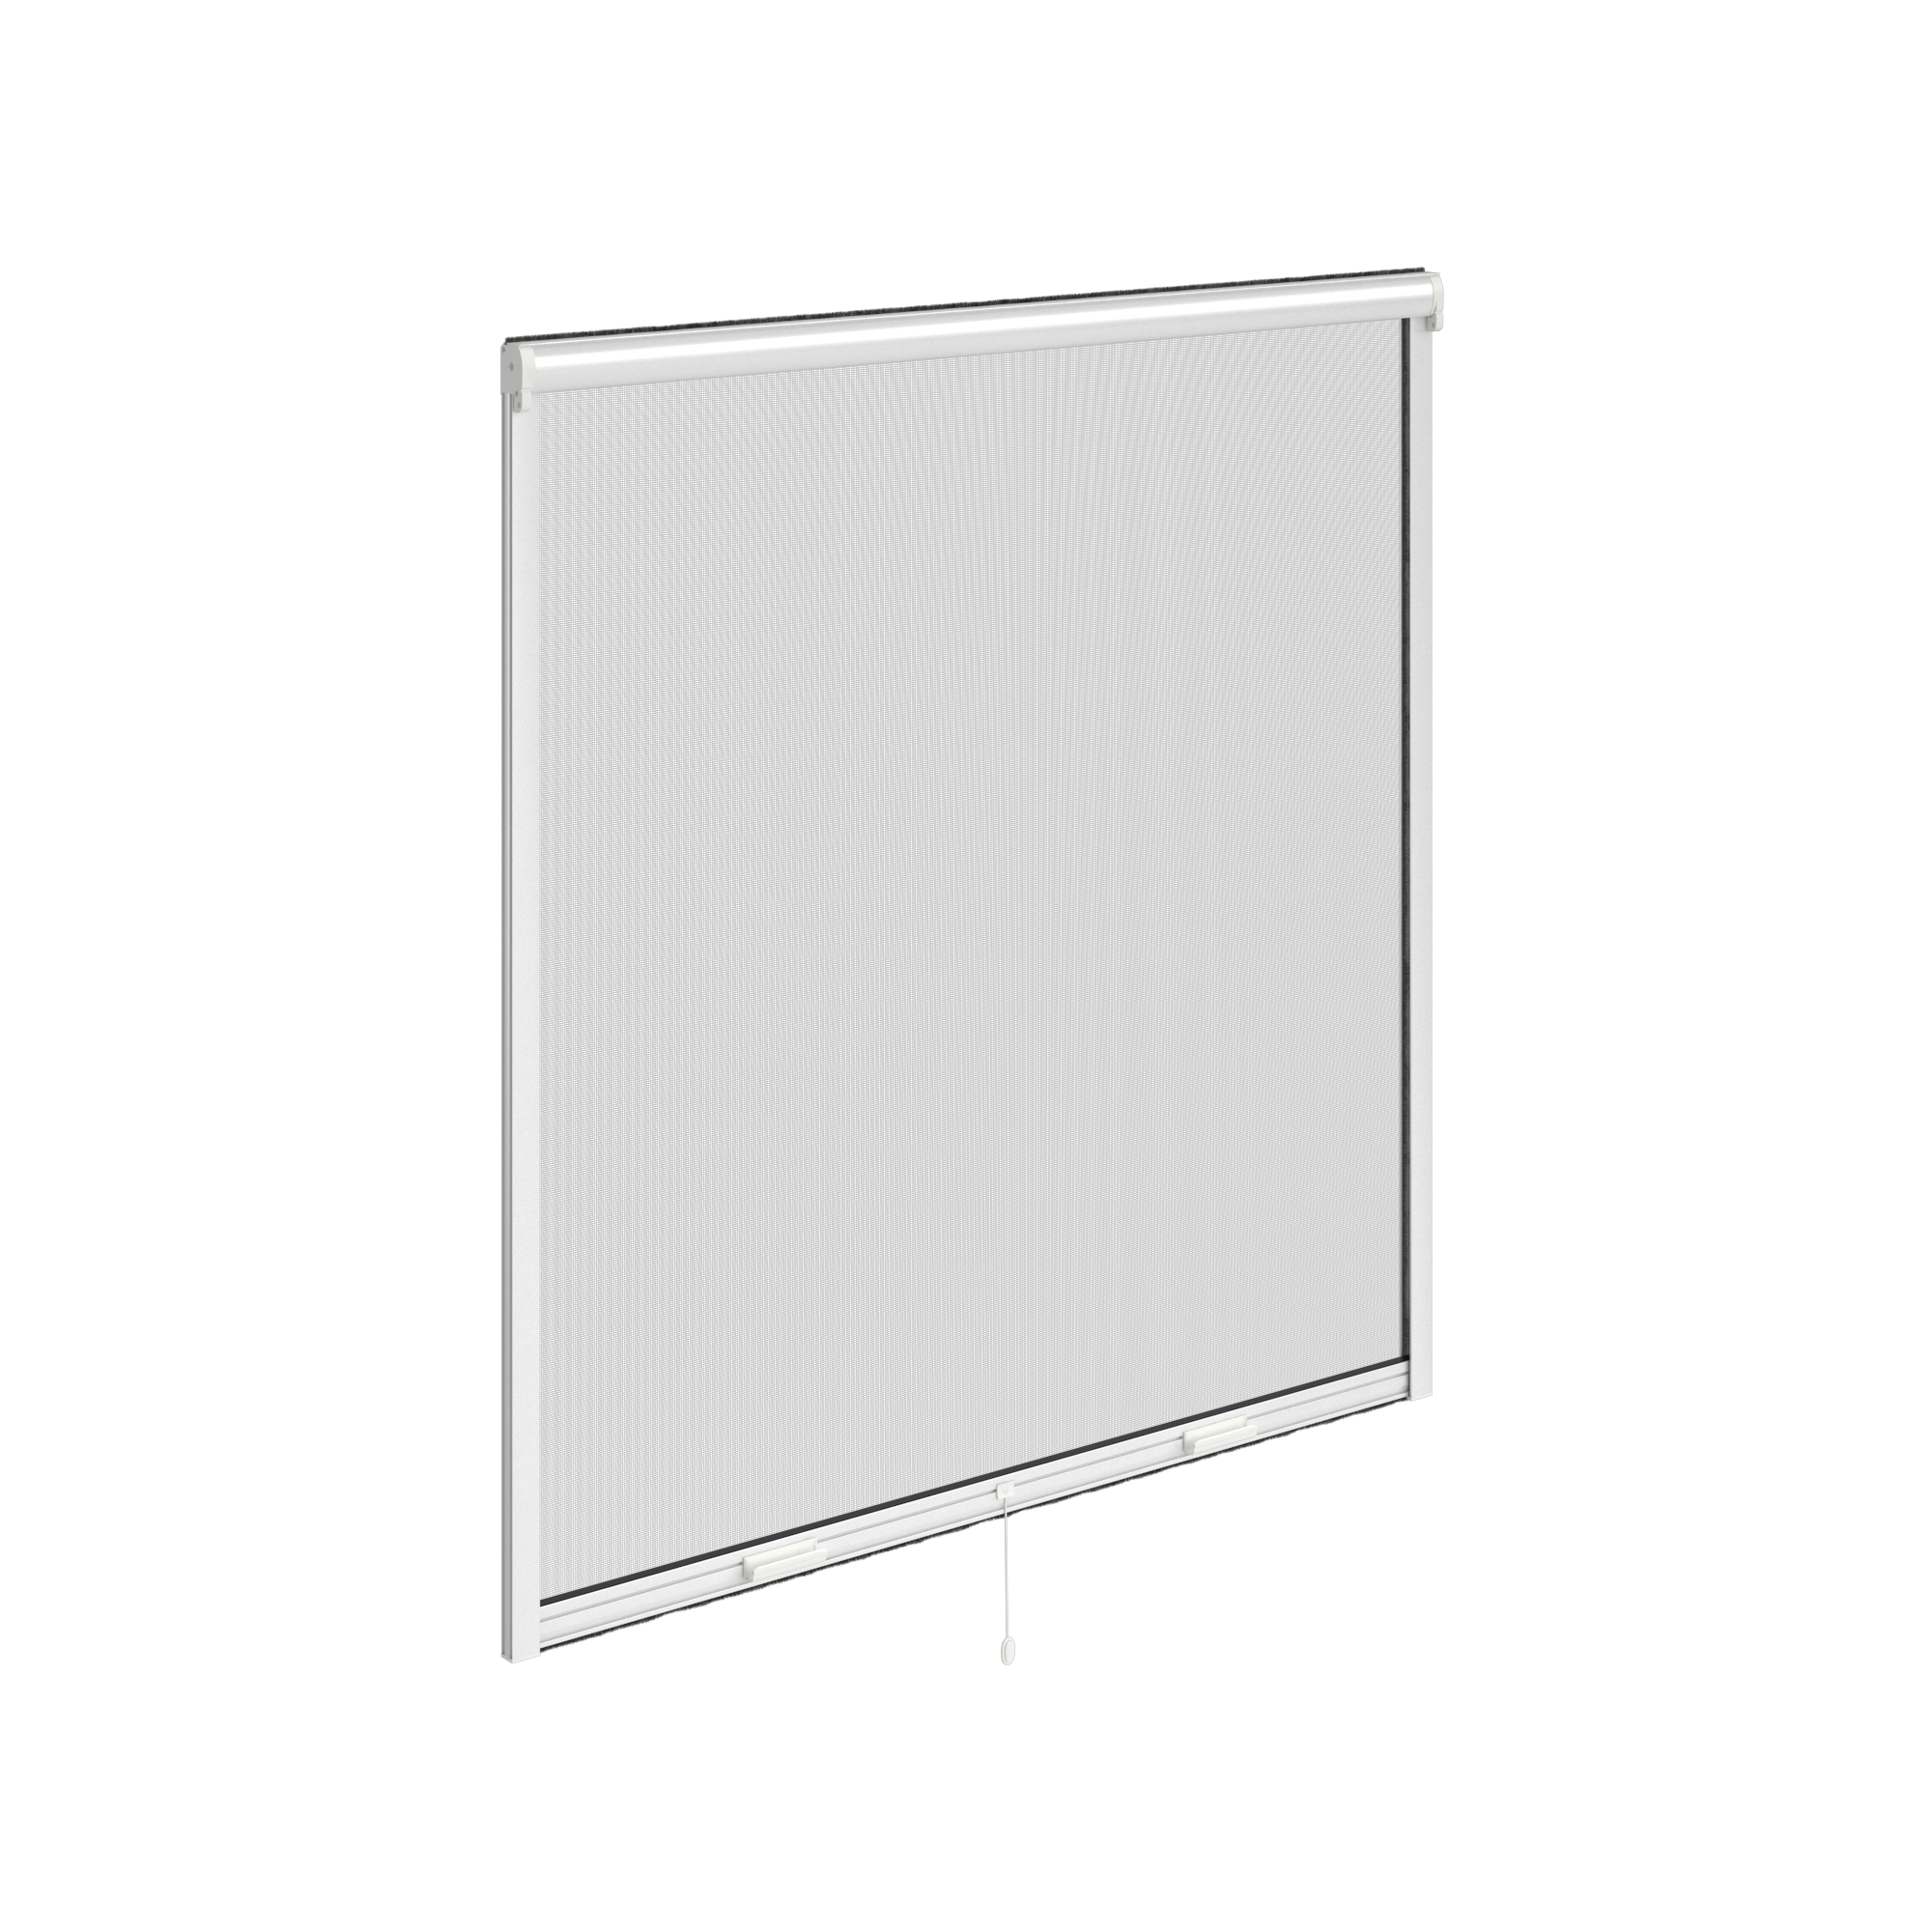 Zanzariera avvolgibile ARTENS per finestra L 100 x H 160 cm bianco - 9